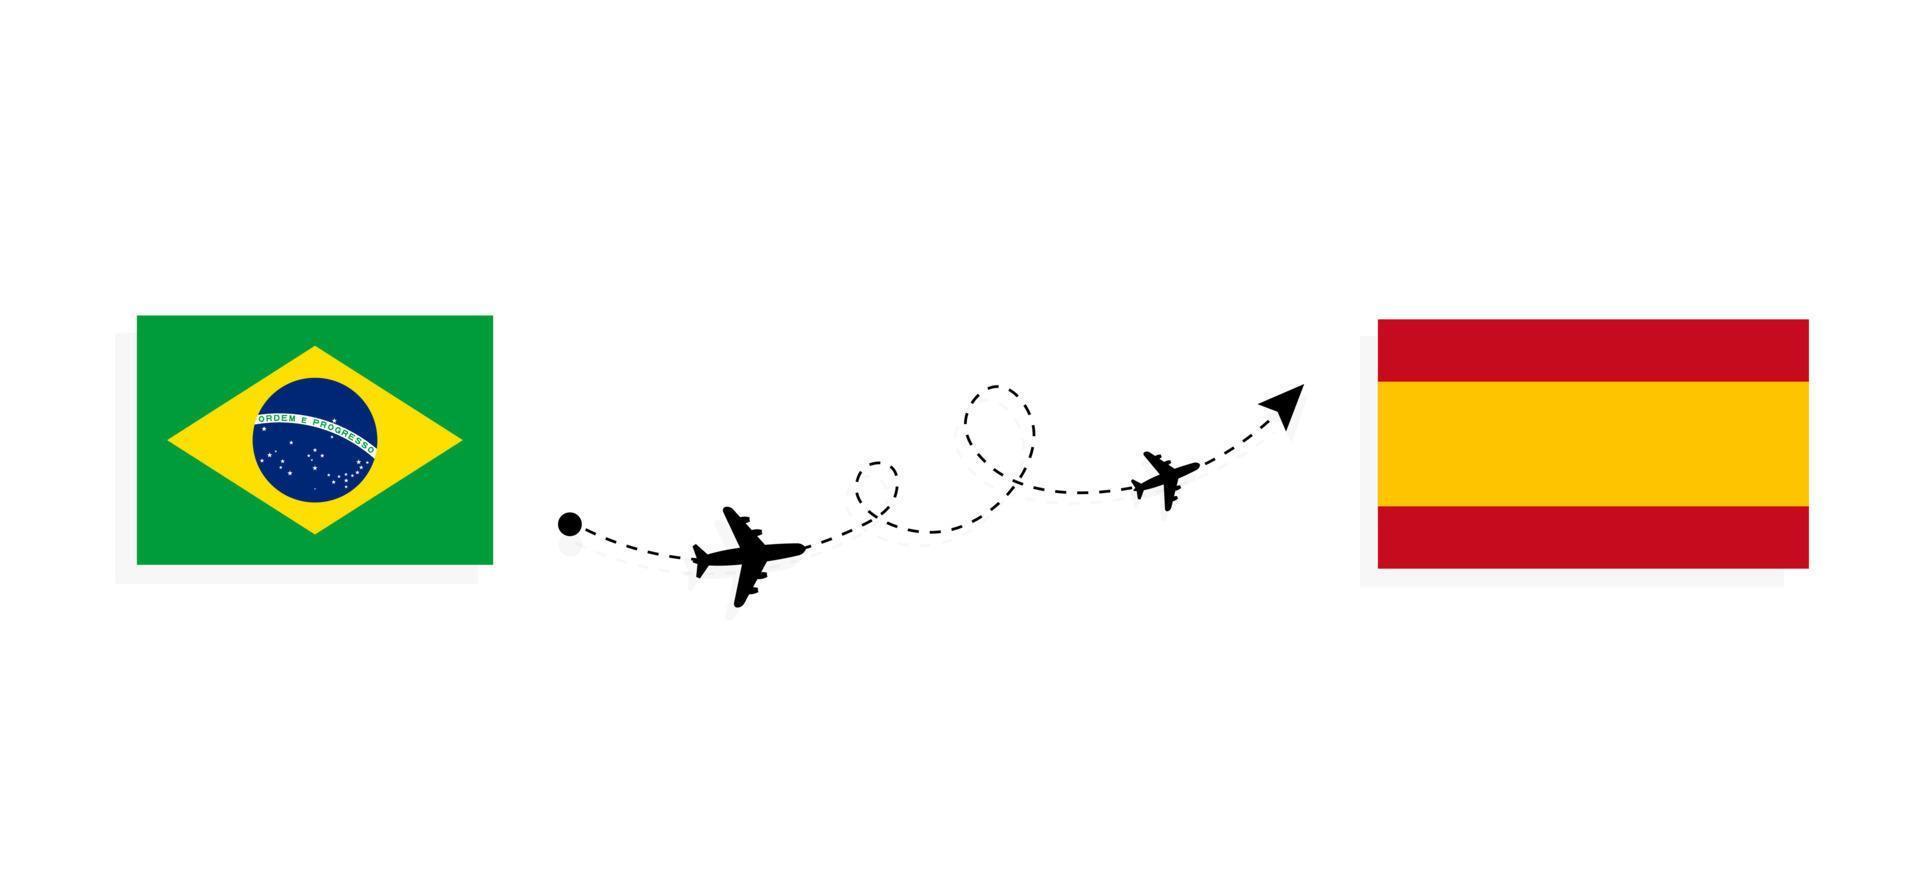 vol et voyage du brésil à l'espagne par concept de voyage en avion de passagers vecteur